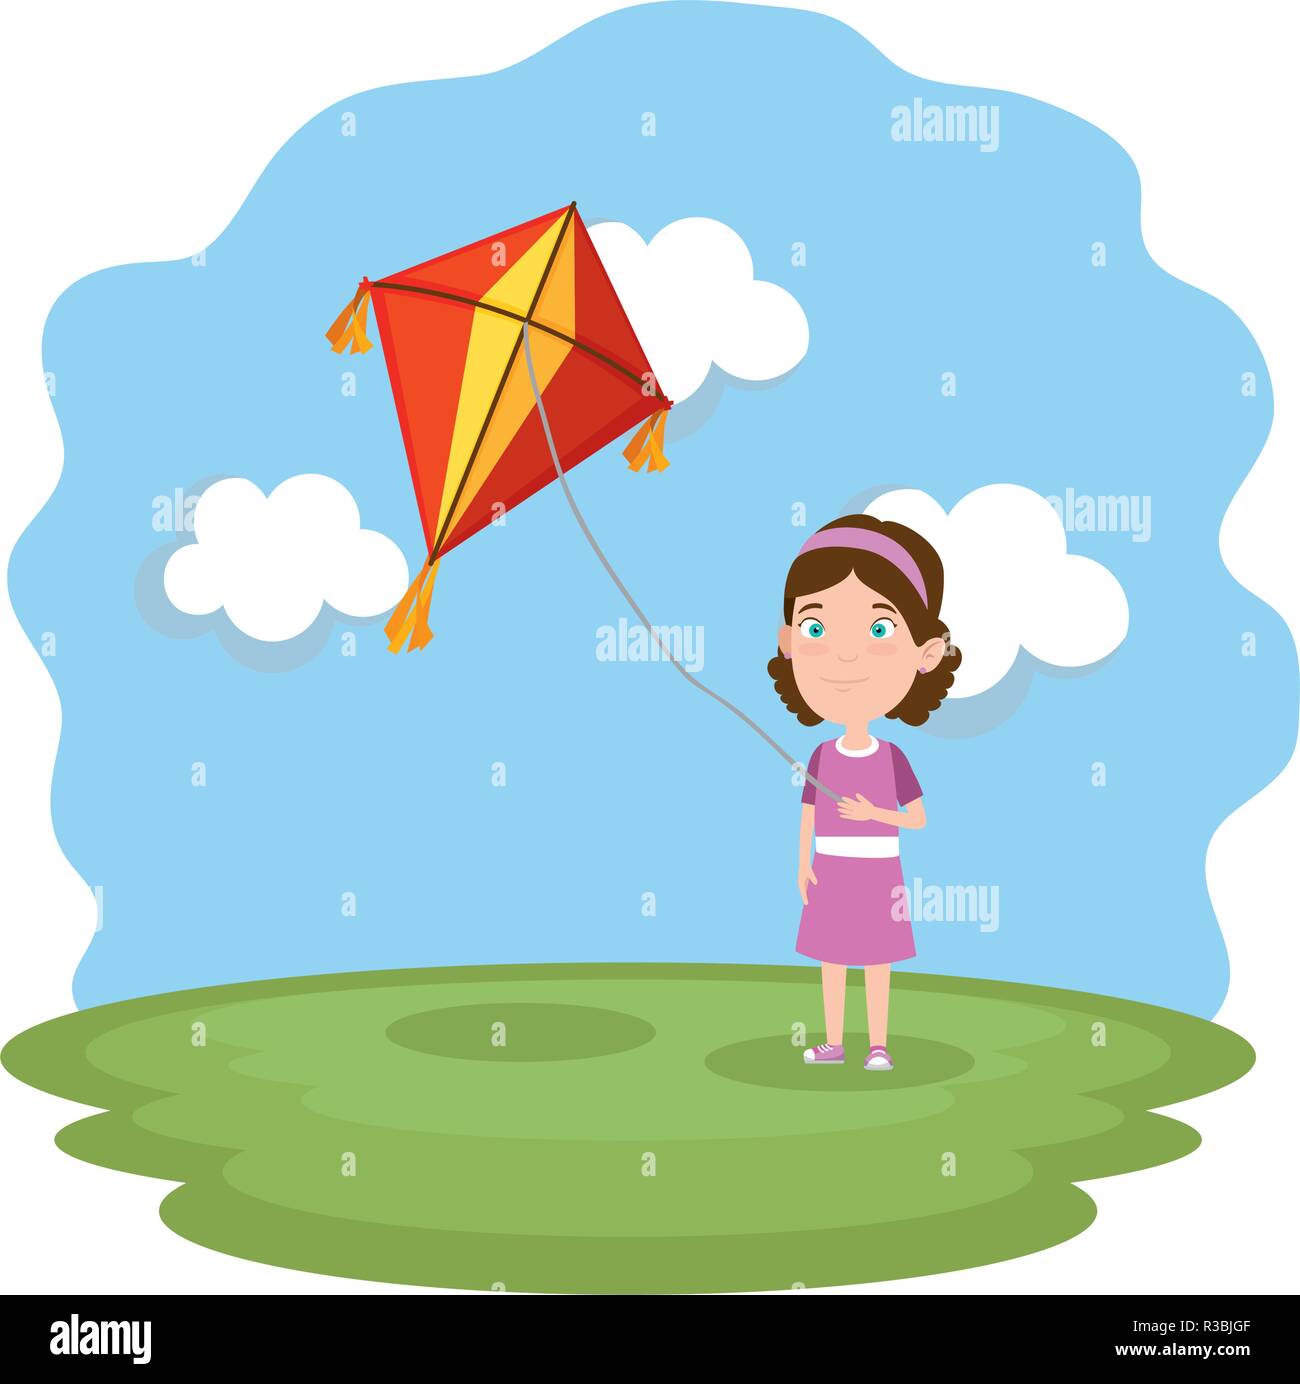 little girl flying kite in the field Stock Vector Image & Art - Alamy